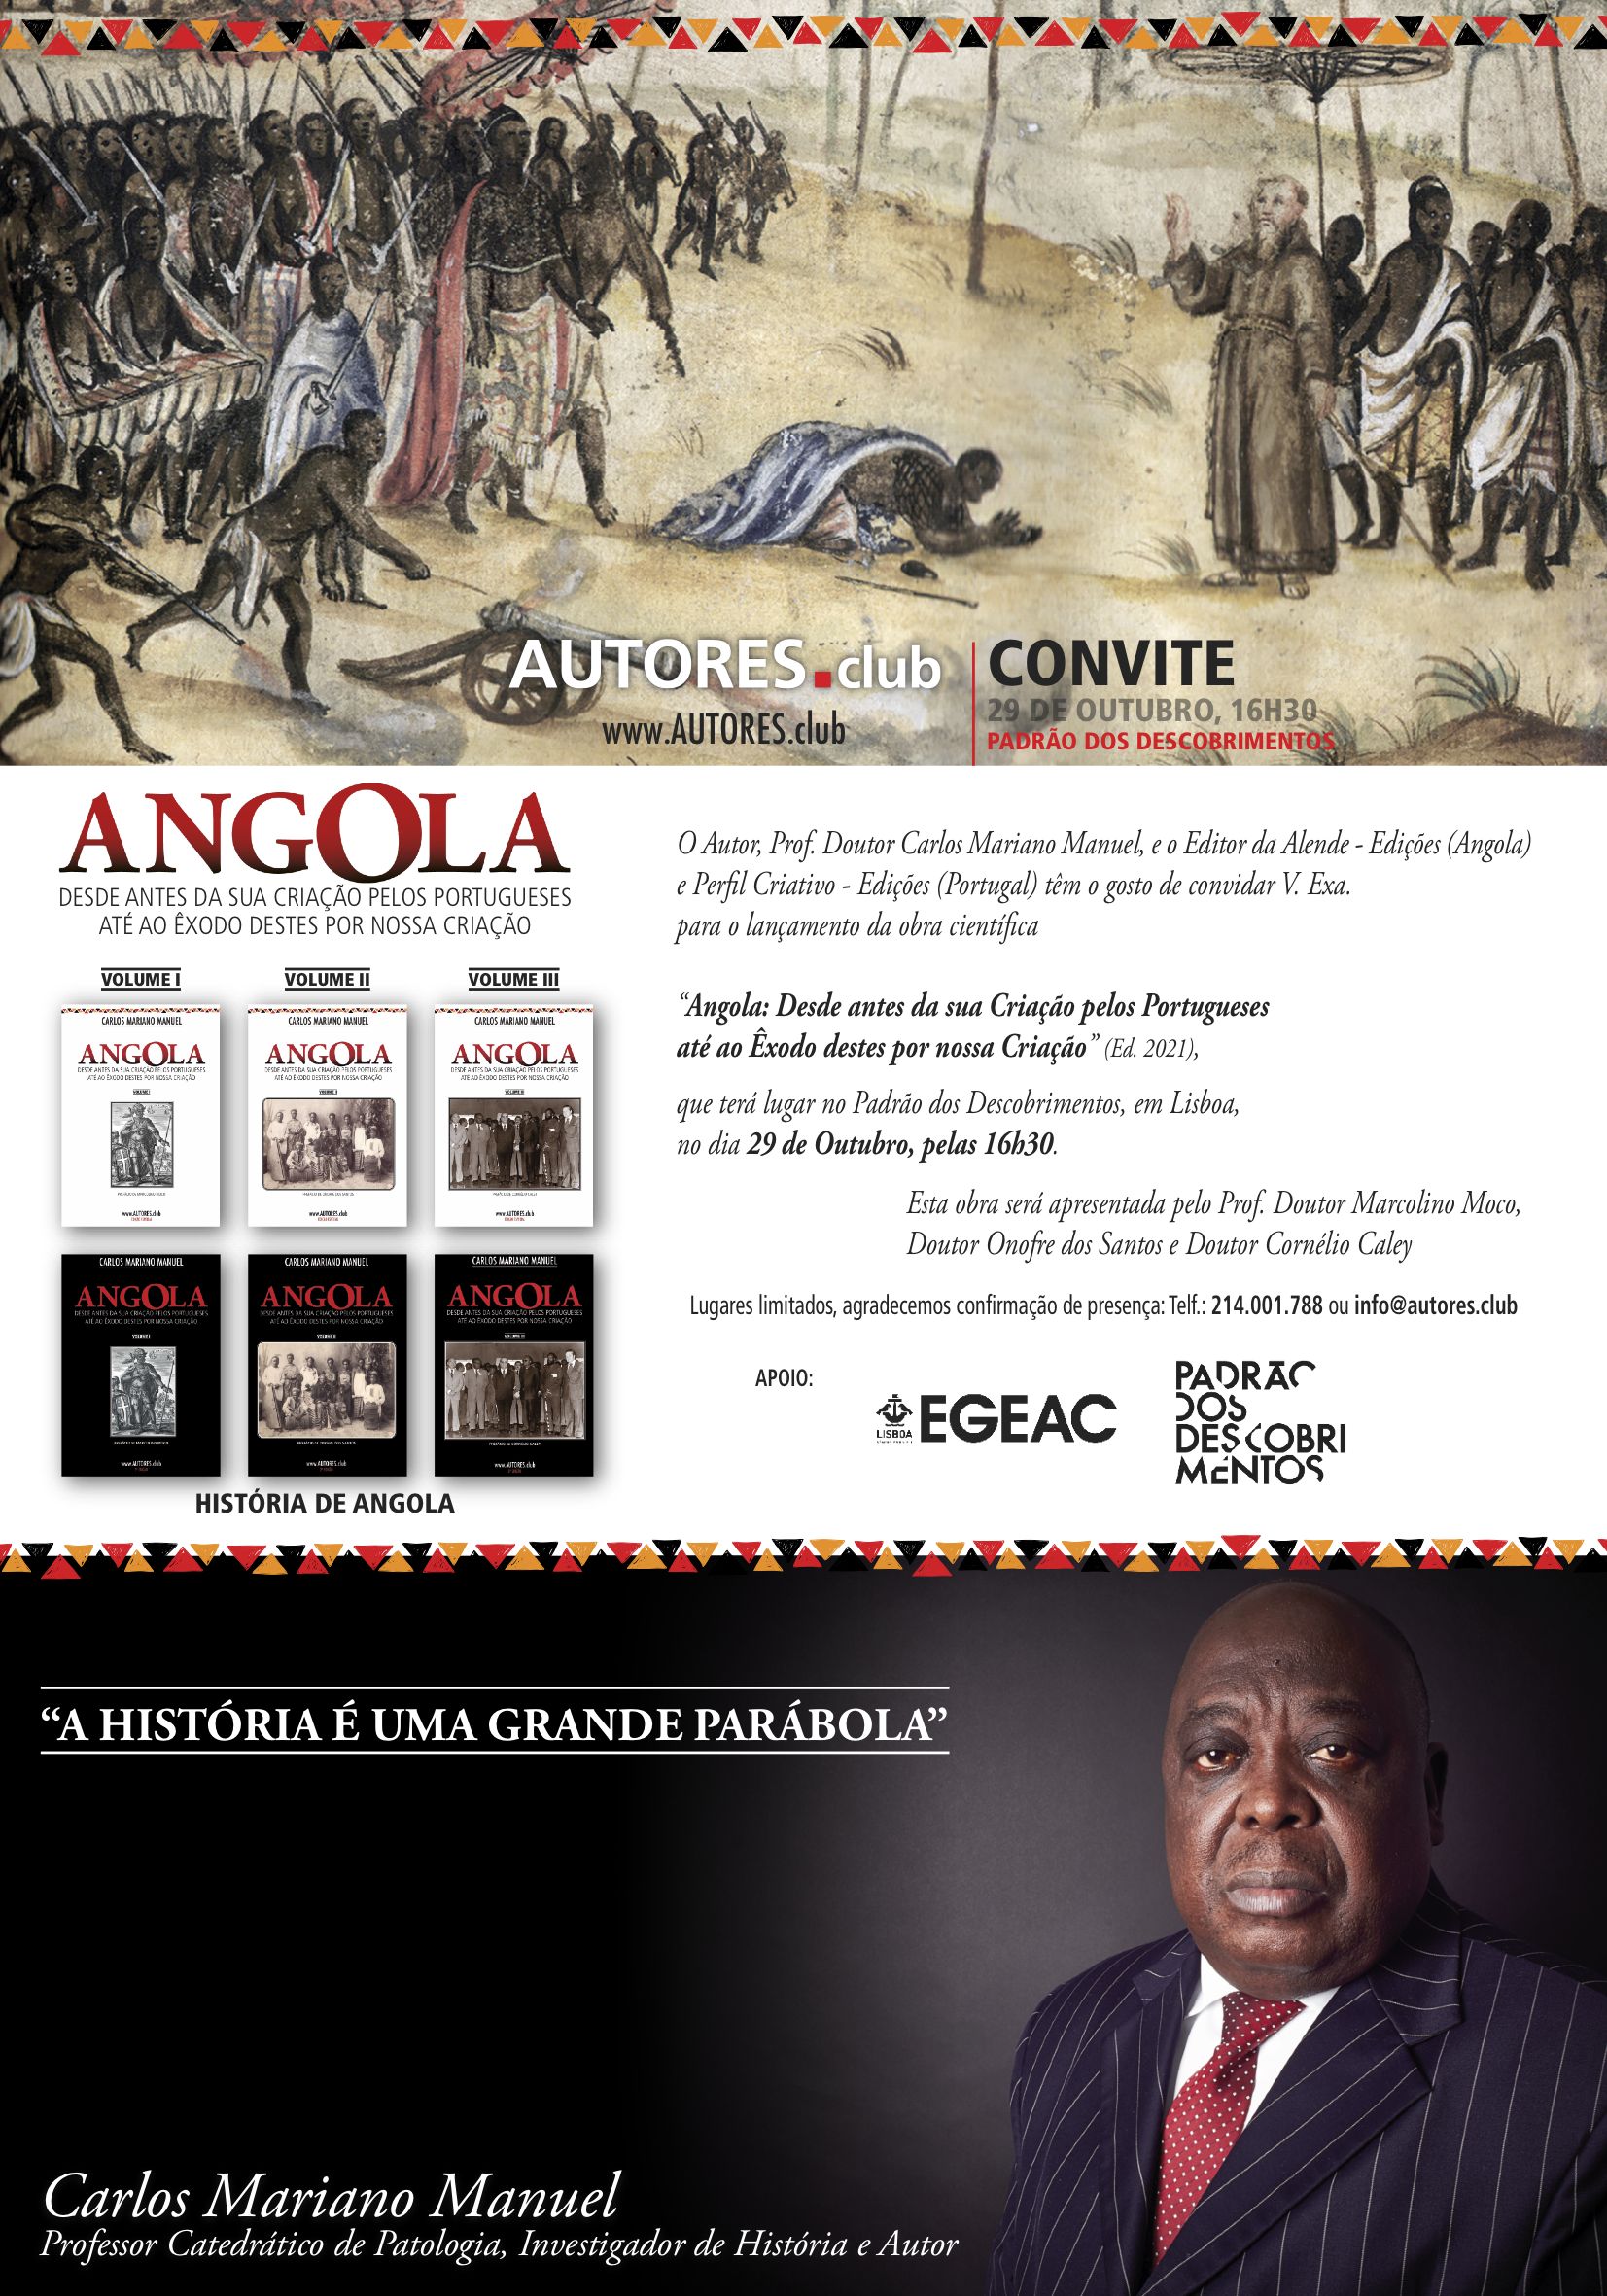 Lançamento oficial de colecção de livros sobre a História de Angola